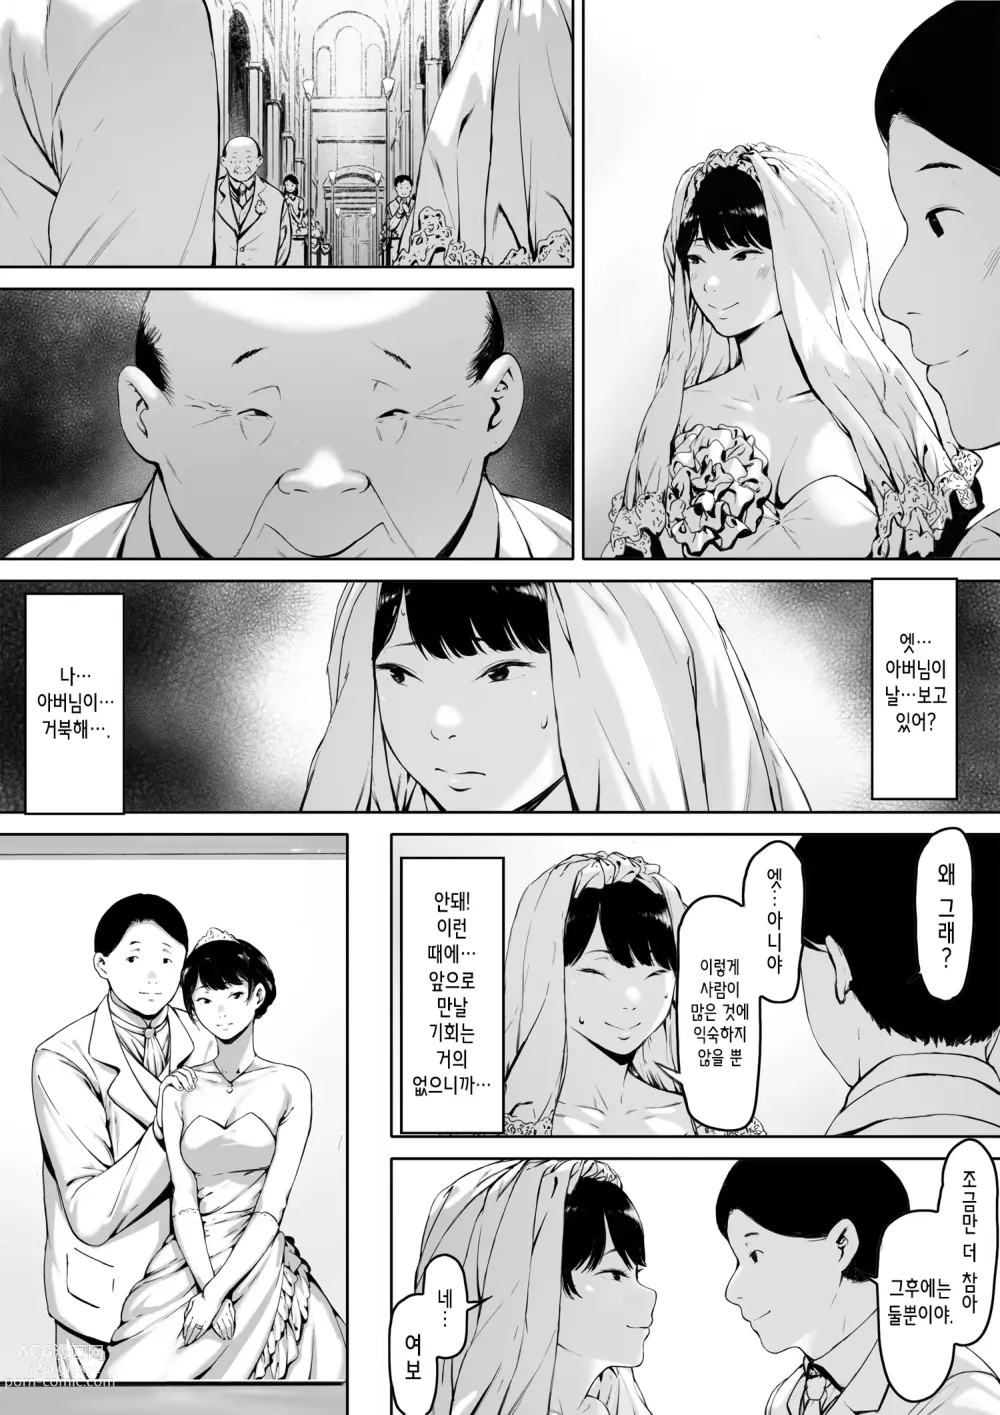 Page 5 of doujinshi 행복한 신혼생활을 보냈어야 했는데 시아버지와 동거하게 됐다 행복한 신혼생활을 보냈어야 했는데